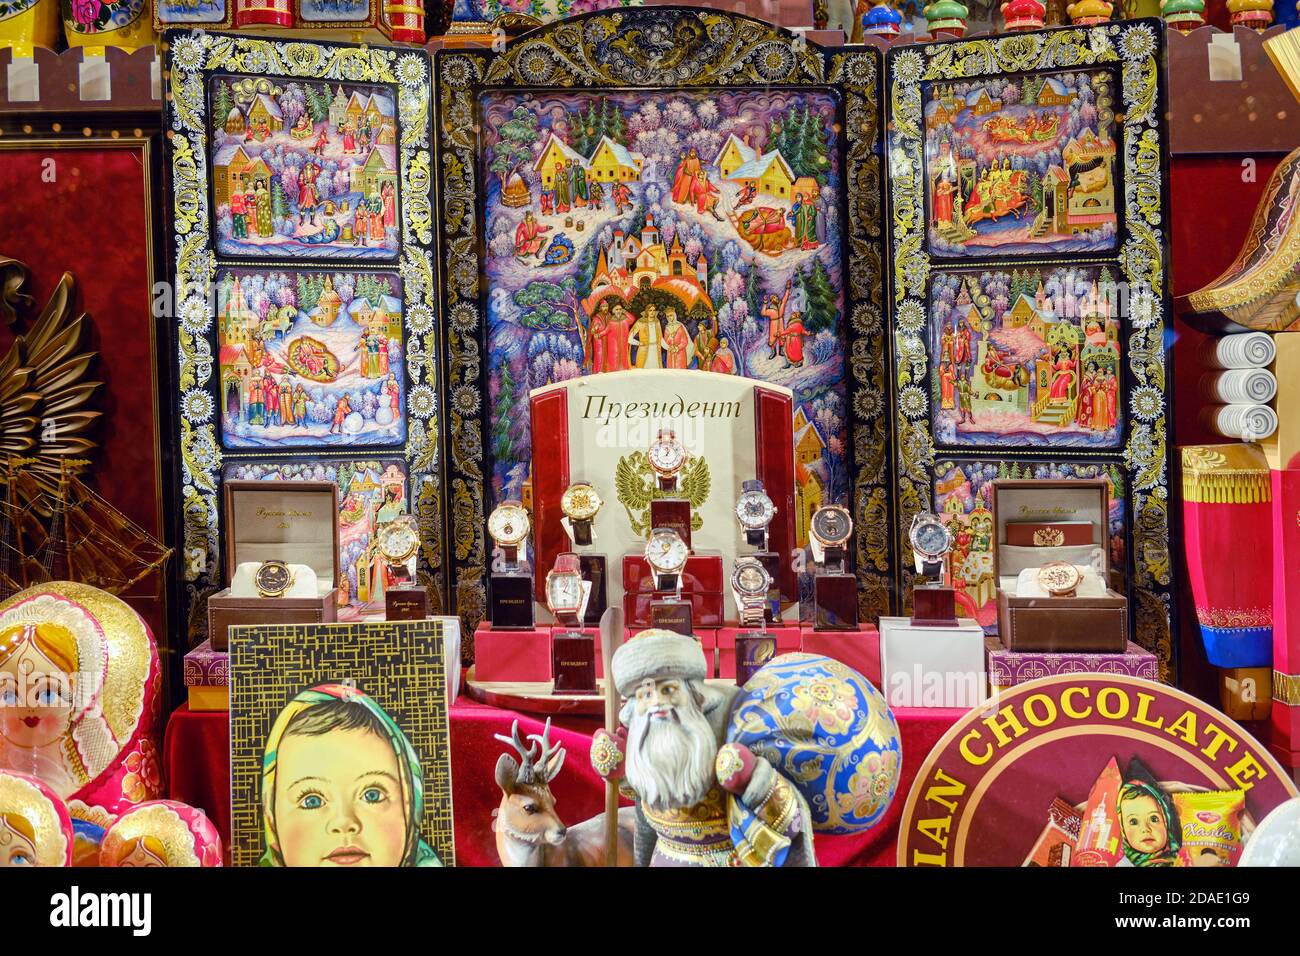 Souvenirladen in Moskau - eine Vitrine mit der Präsidentenuhr, russischen Gemälden, nistenden Puppen, Schokolade und dem Weihnachtsmann (Pater Frost) - Moskau, Stockfoto